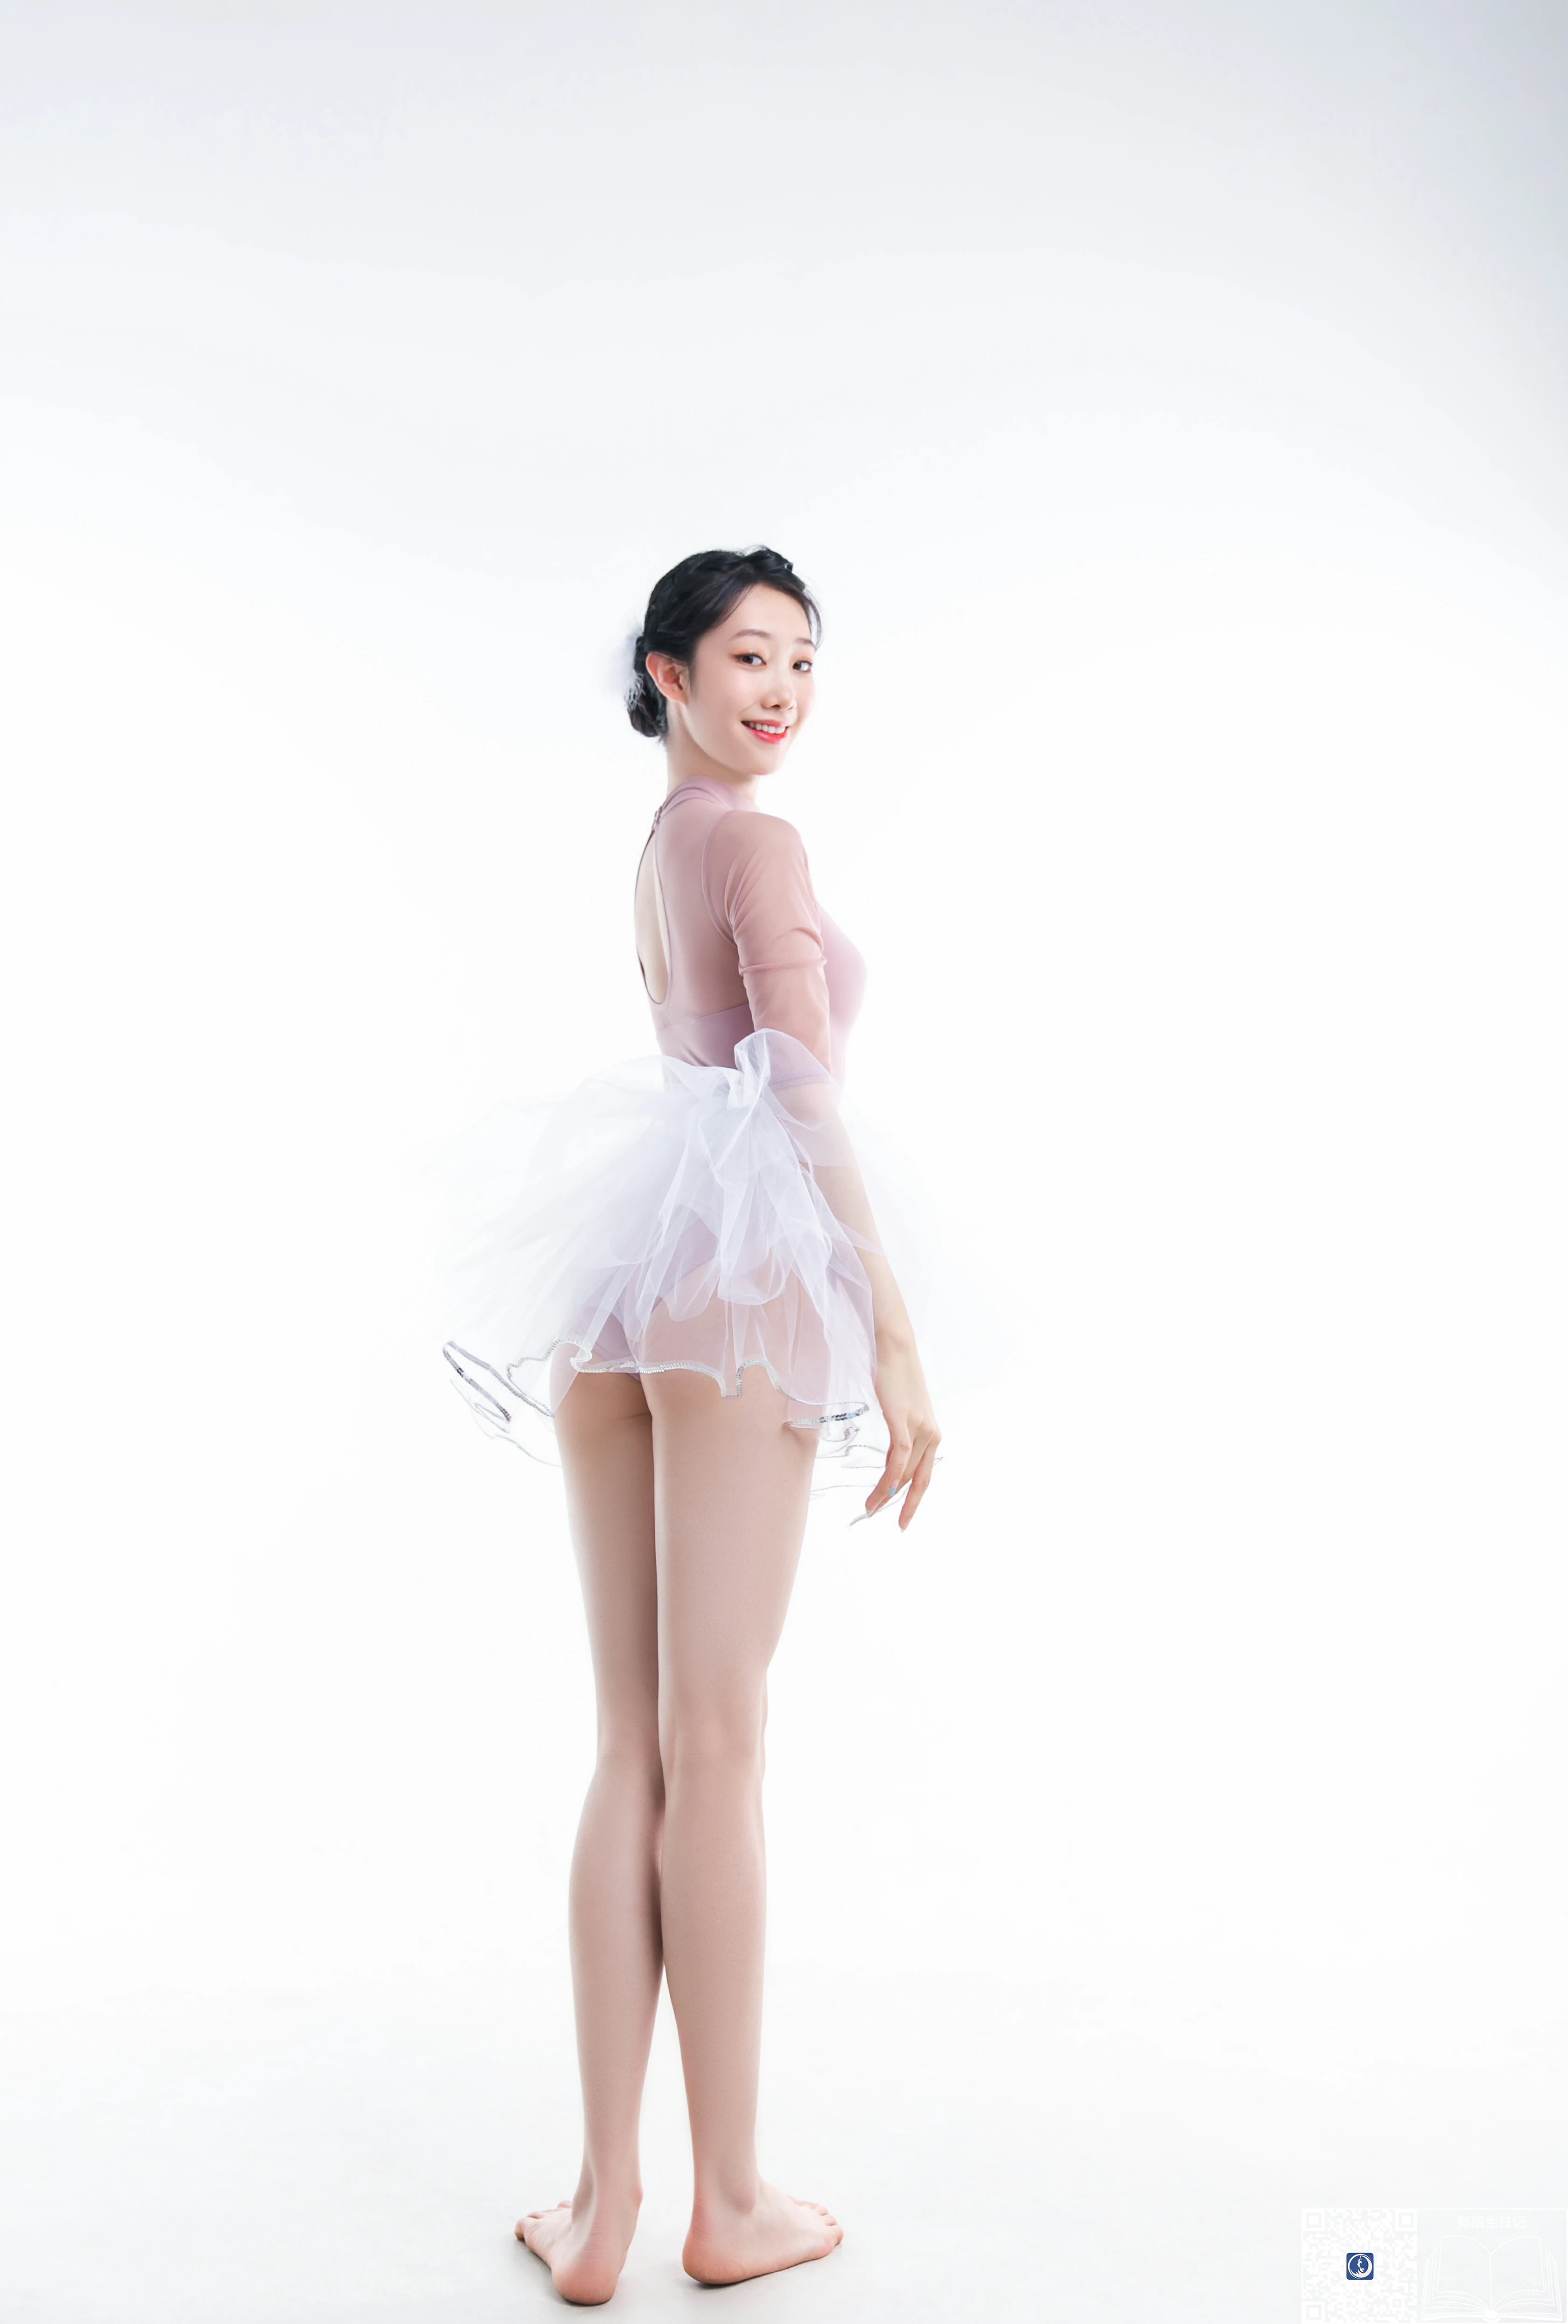 [GALLI嘉丽]舞蹈生日记 034 芭蕾少女 鱼子 粉色紧身连衣体操服性感私房写真集,0022